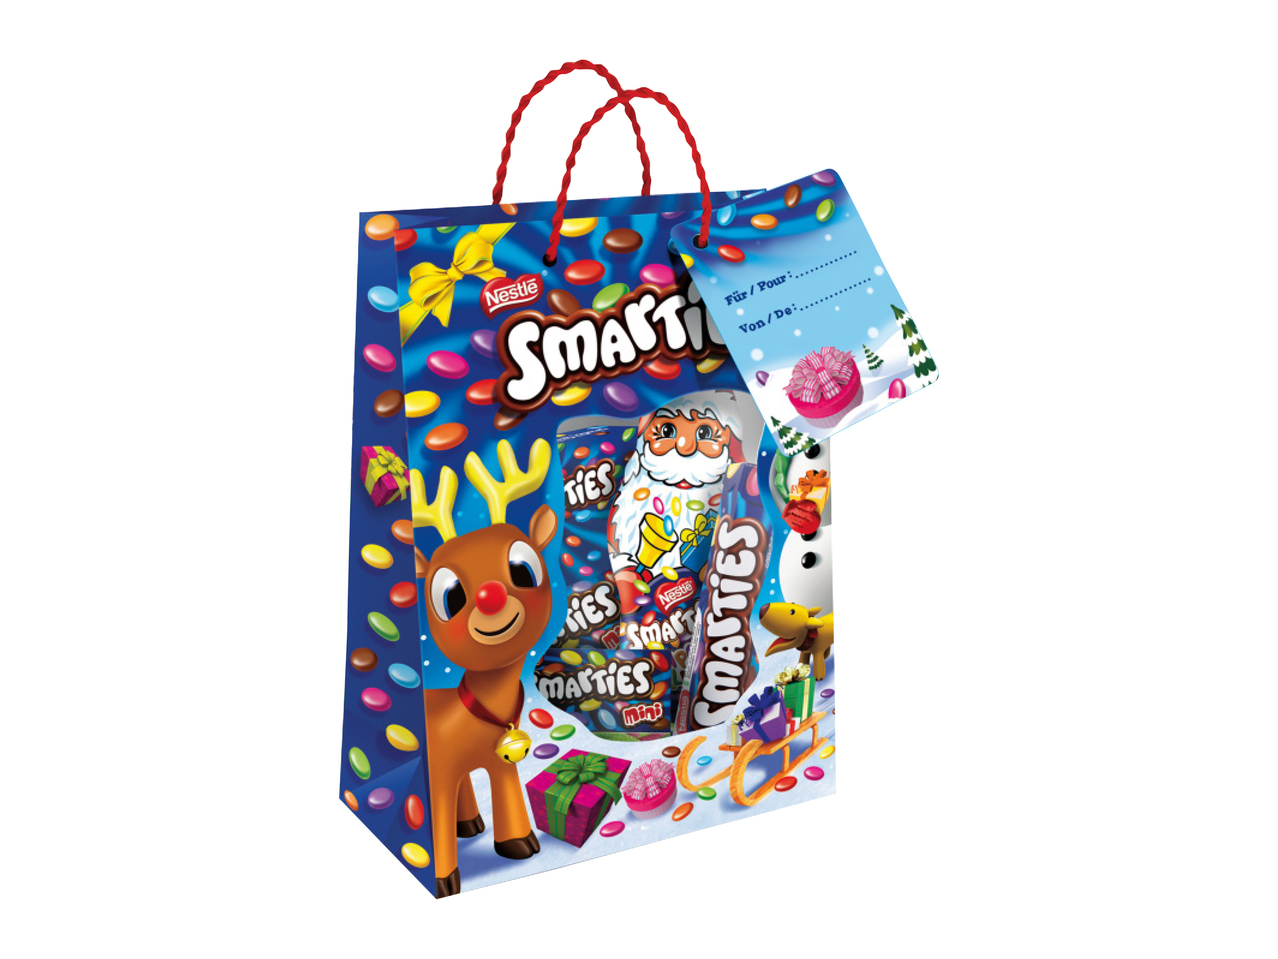 Nestlé Smarties Christmas Bag